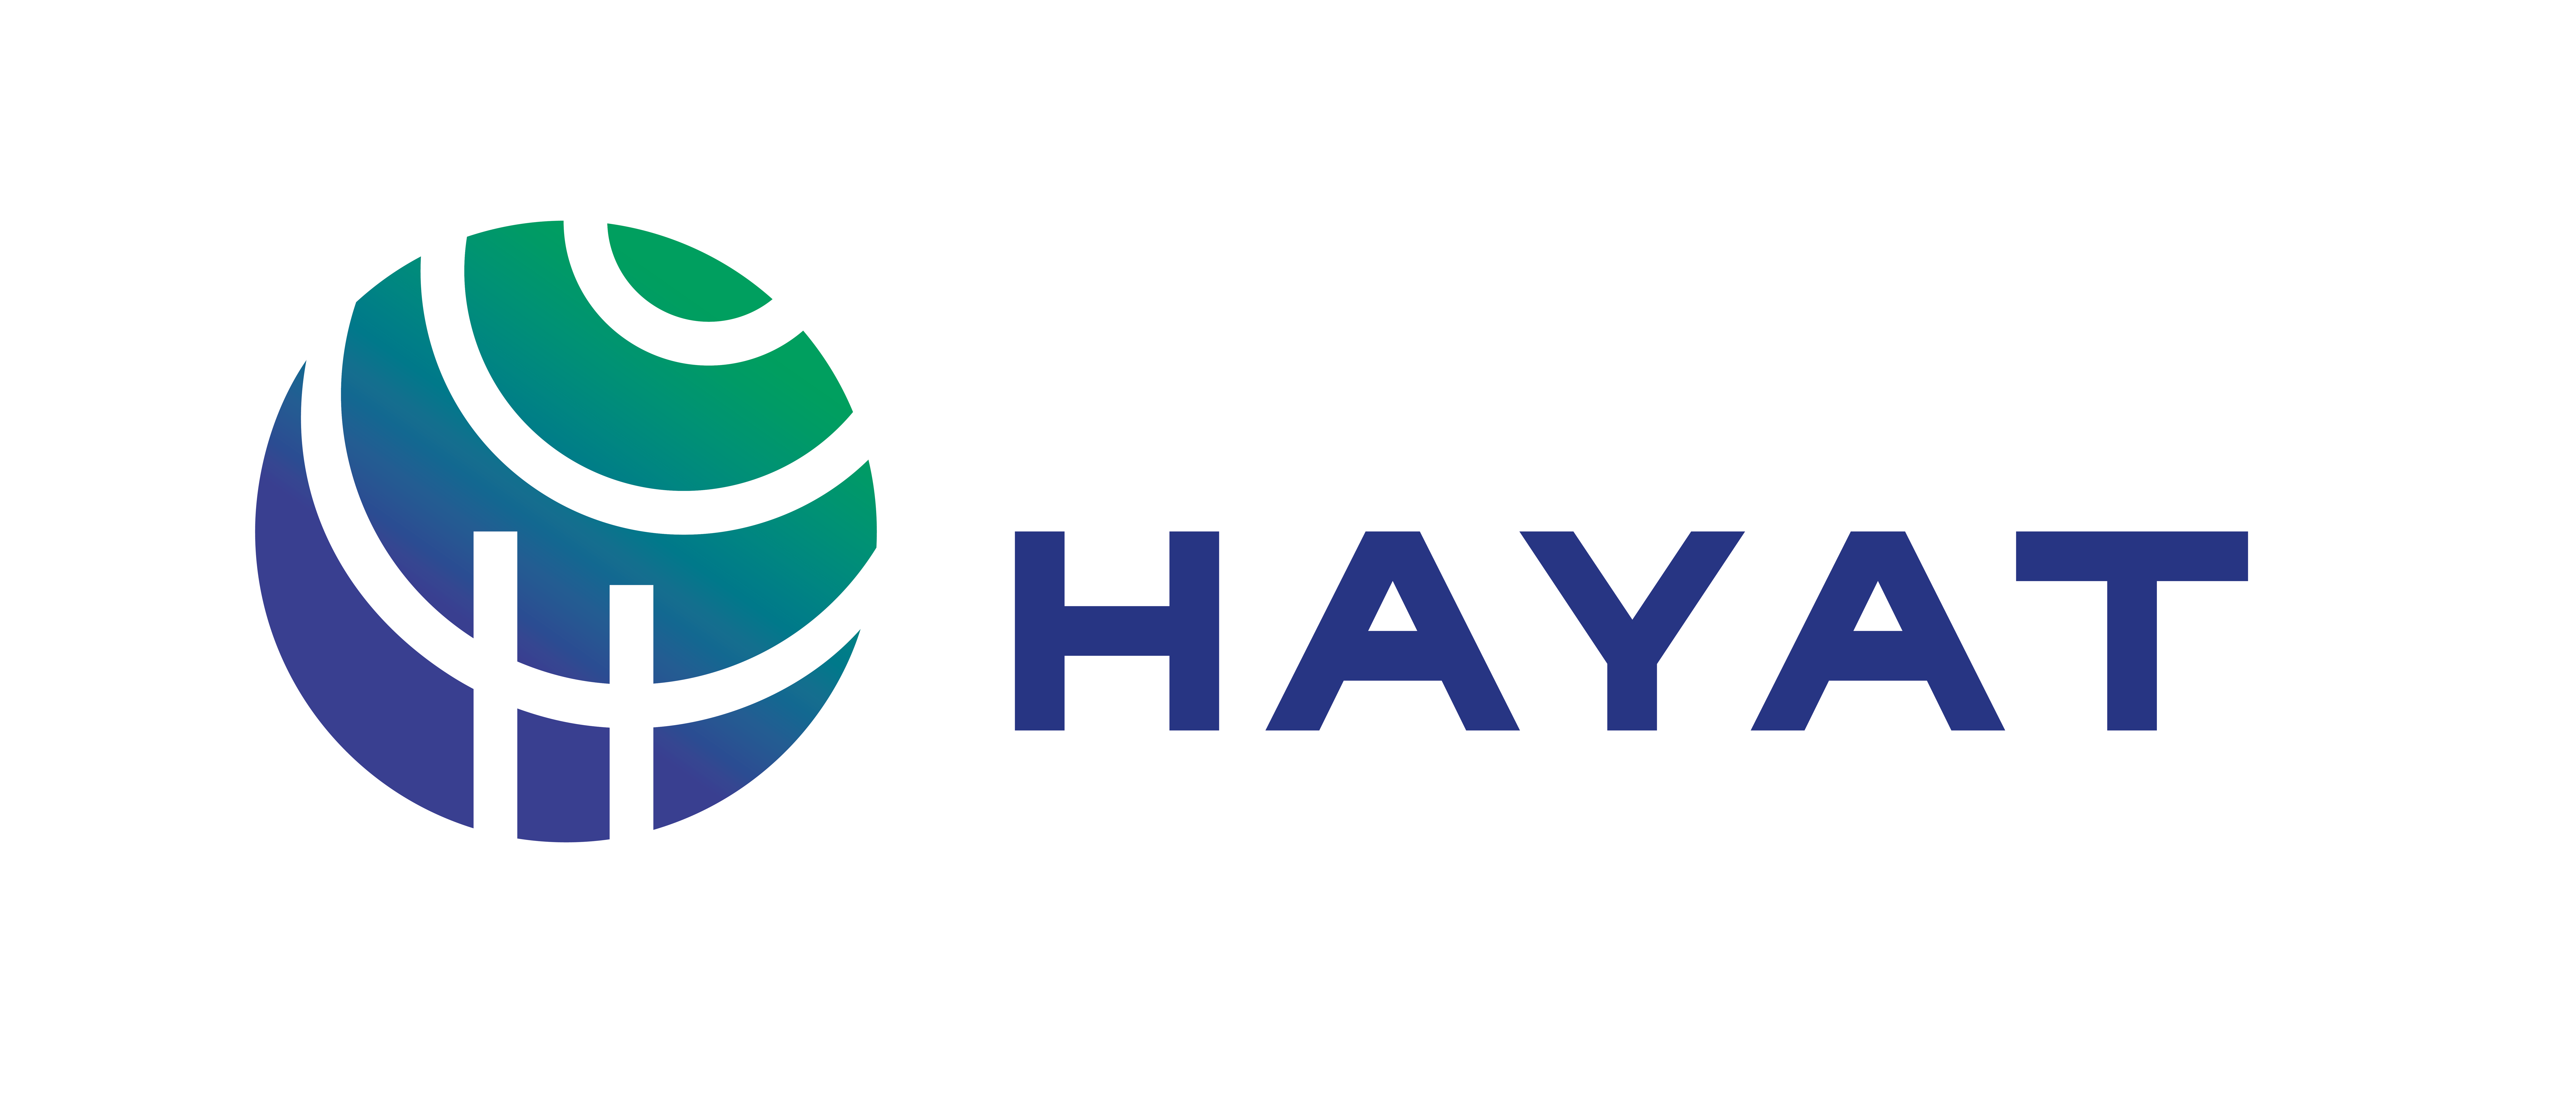 Hayat_Logo-01.png